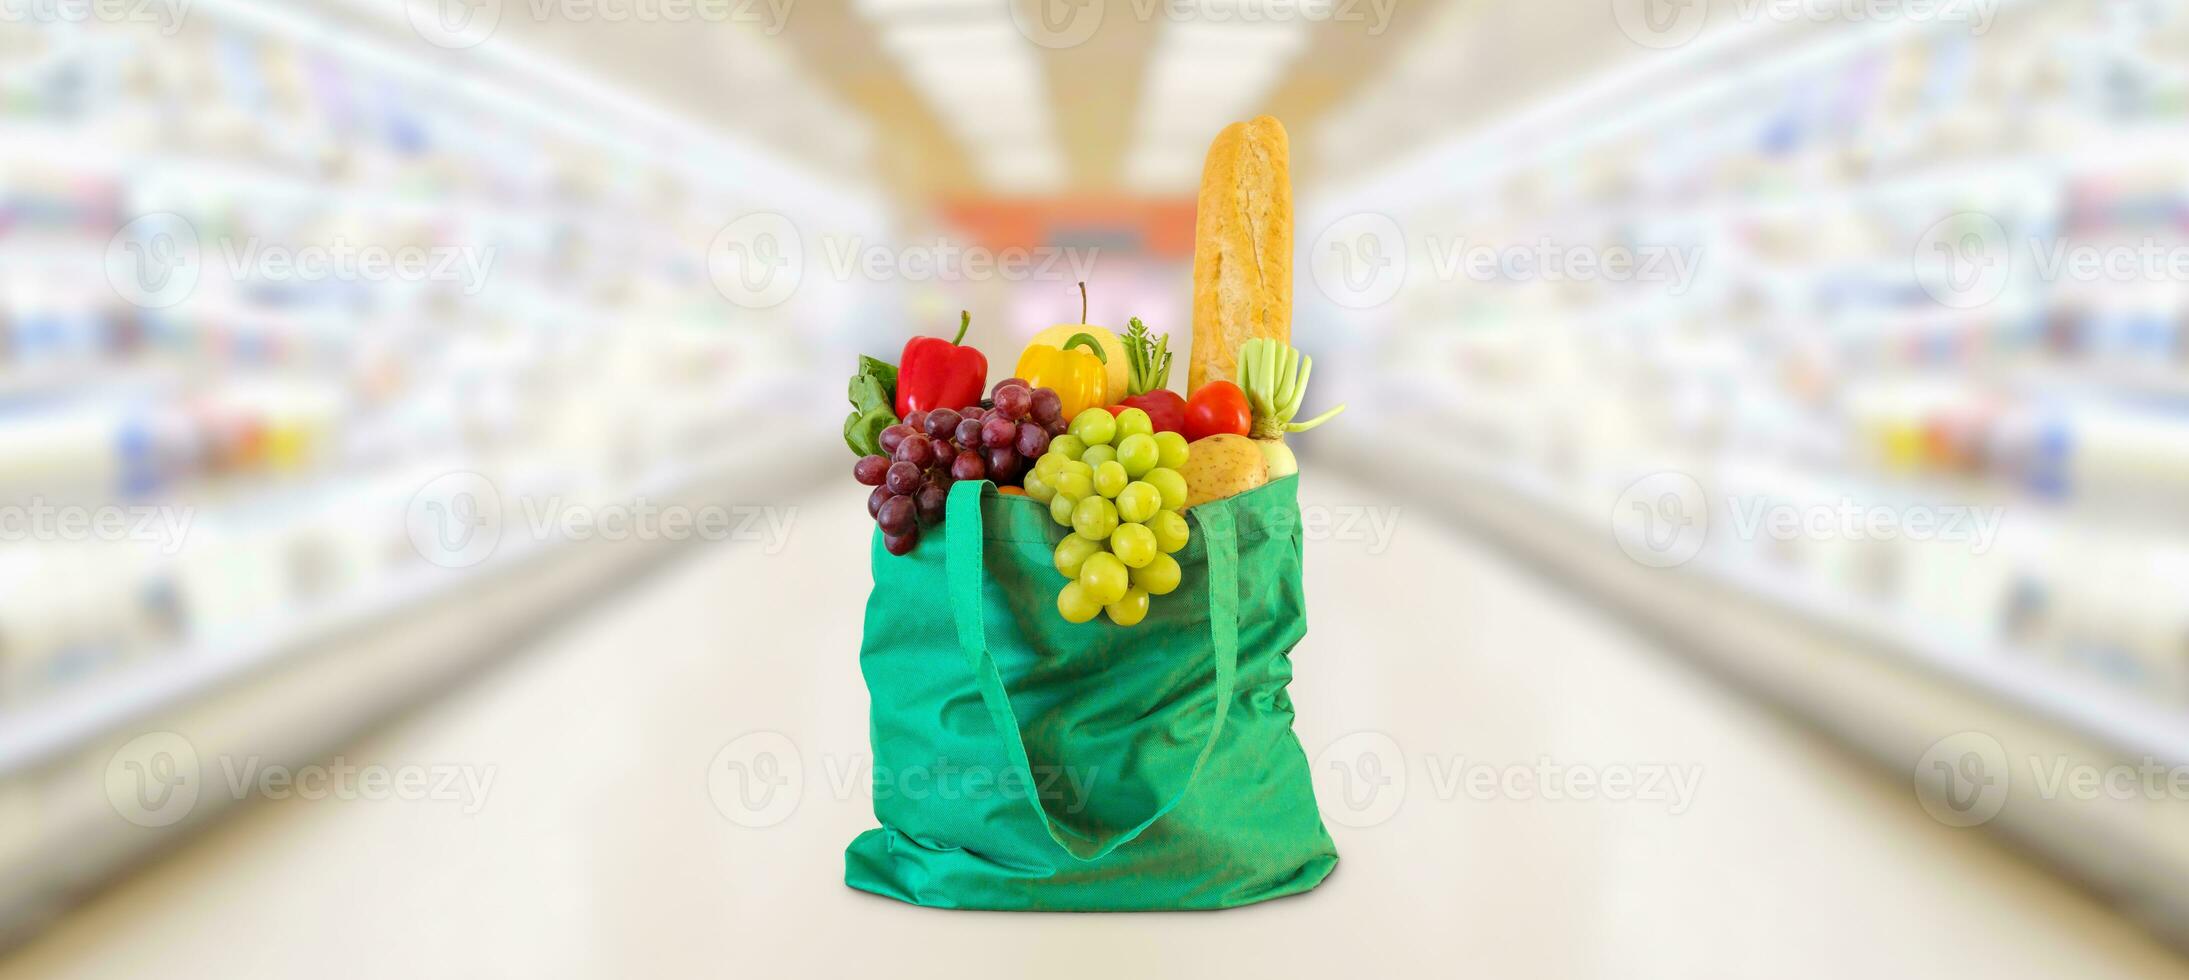 boodschappen doen zak met fruit en groenten in supermarkt kruidenier op te slaan wazig achtergrond foto